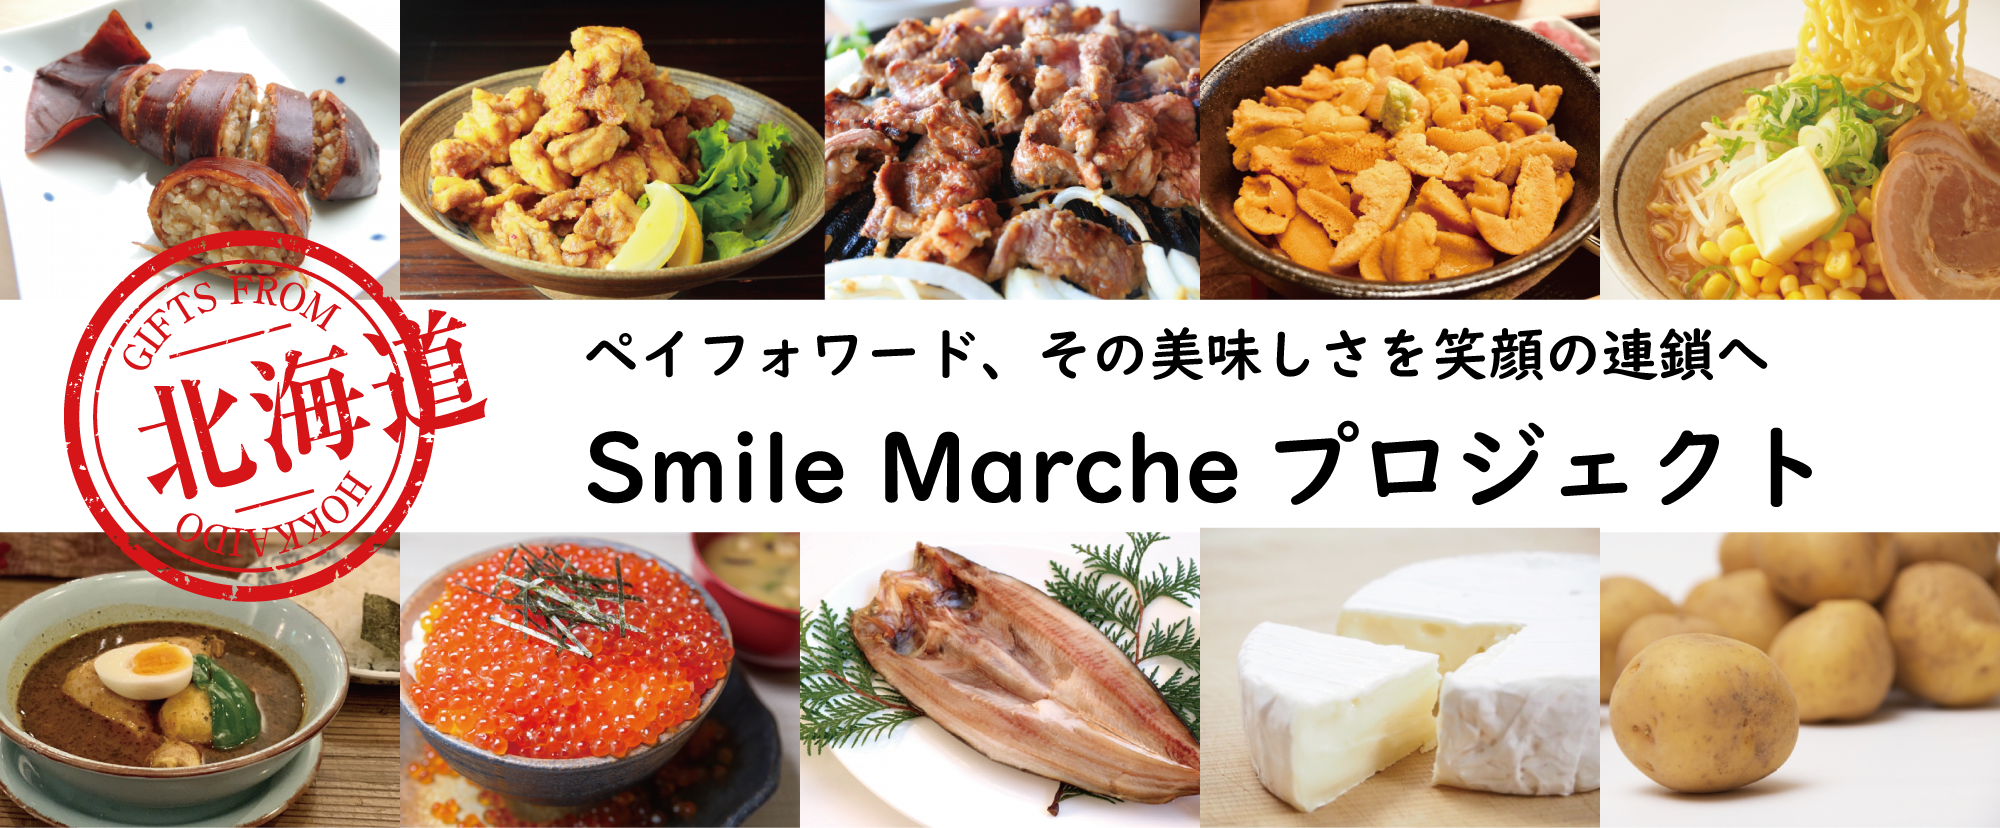 北海道の食品事業者の支援「SmileMarcheプロジェクト」発足